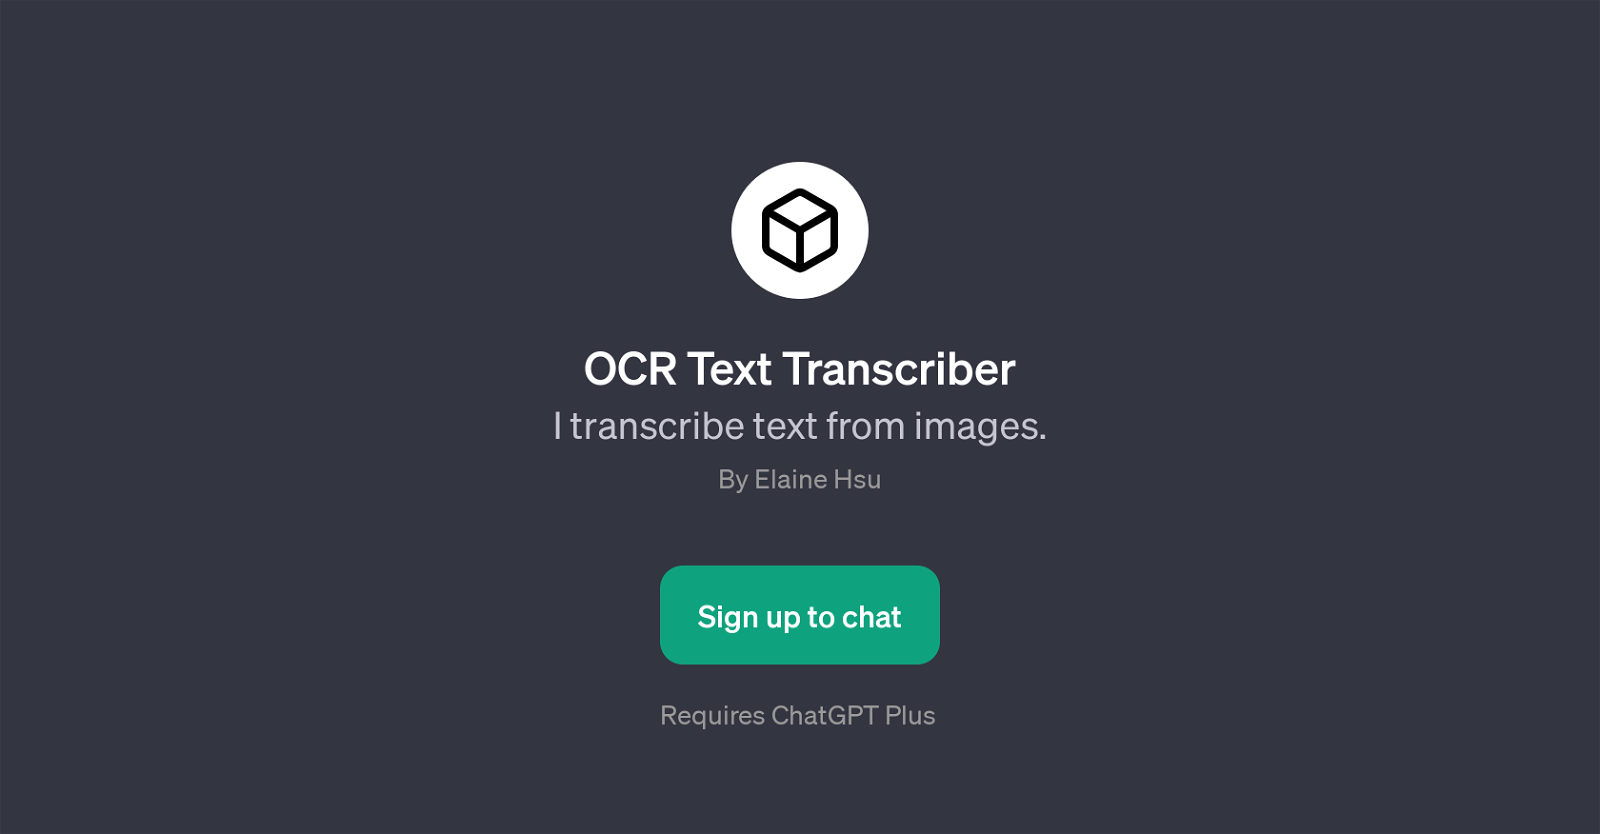 OCR Text Transcriber website